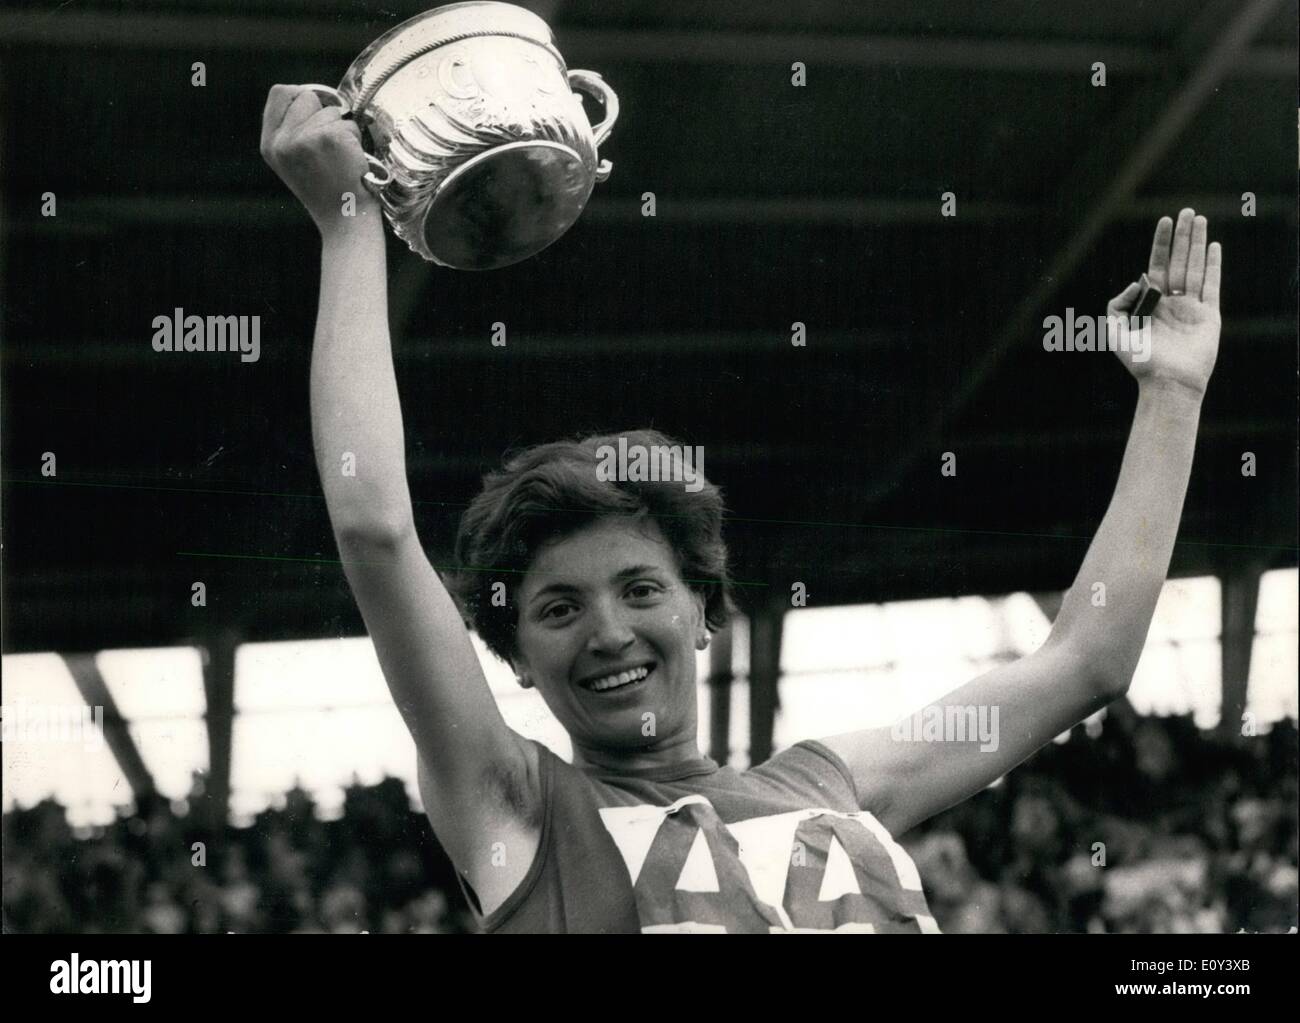 Lug. 07, 1968 - Le donne della A.A.A. campionati a Crystal Palace. Vera Nikolic rompe mondo 800 metri record.: Vera Nikolic della Jugoslavia oggi ha rotto il record del mondo nella finale dei 800 metri durante la donna A.A.A. Campionati al Crystal Palace di Londra, oggi. Il suo tempo è stato di 2 minuti. 0.5Secs. Lillian Board (Londra Olympiade A.S.) era secondo in 2 minuti 2 secondi un Regno Unito (tutti gli spigoli) record. Mostra fotografica di Vera Nikolic, mantiene il suo trofeo aloft dopo la rottura del mondo metri 800 registra oggi, al Crystal Palace. Foto Stock